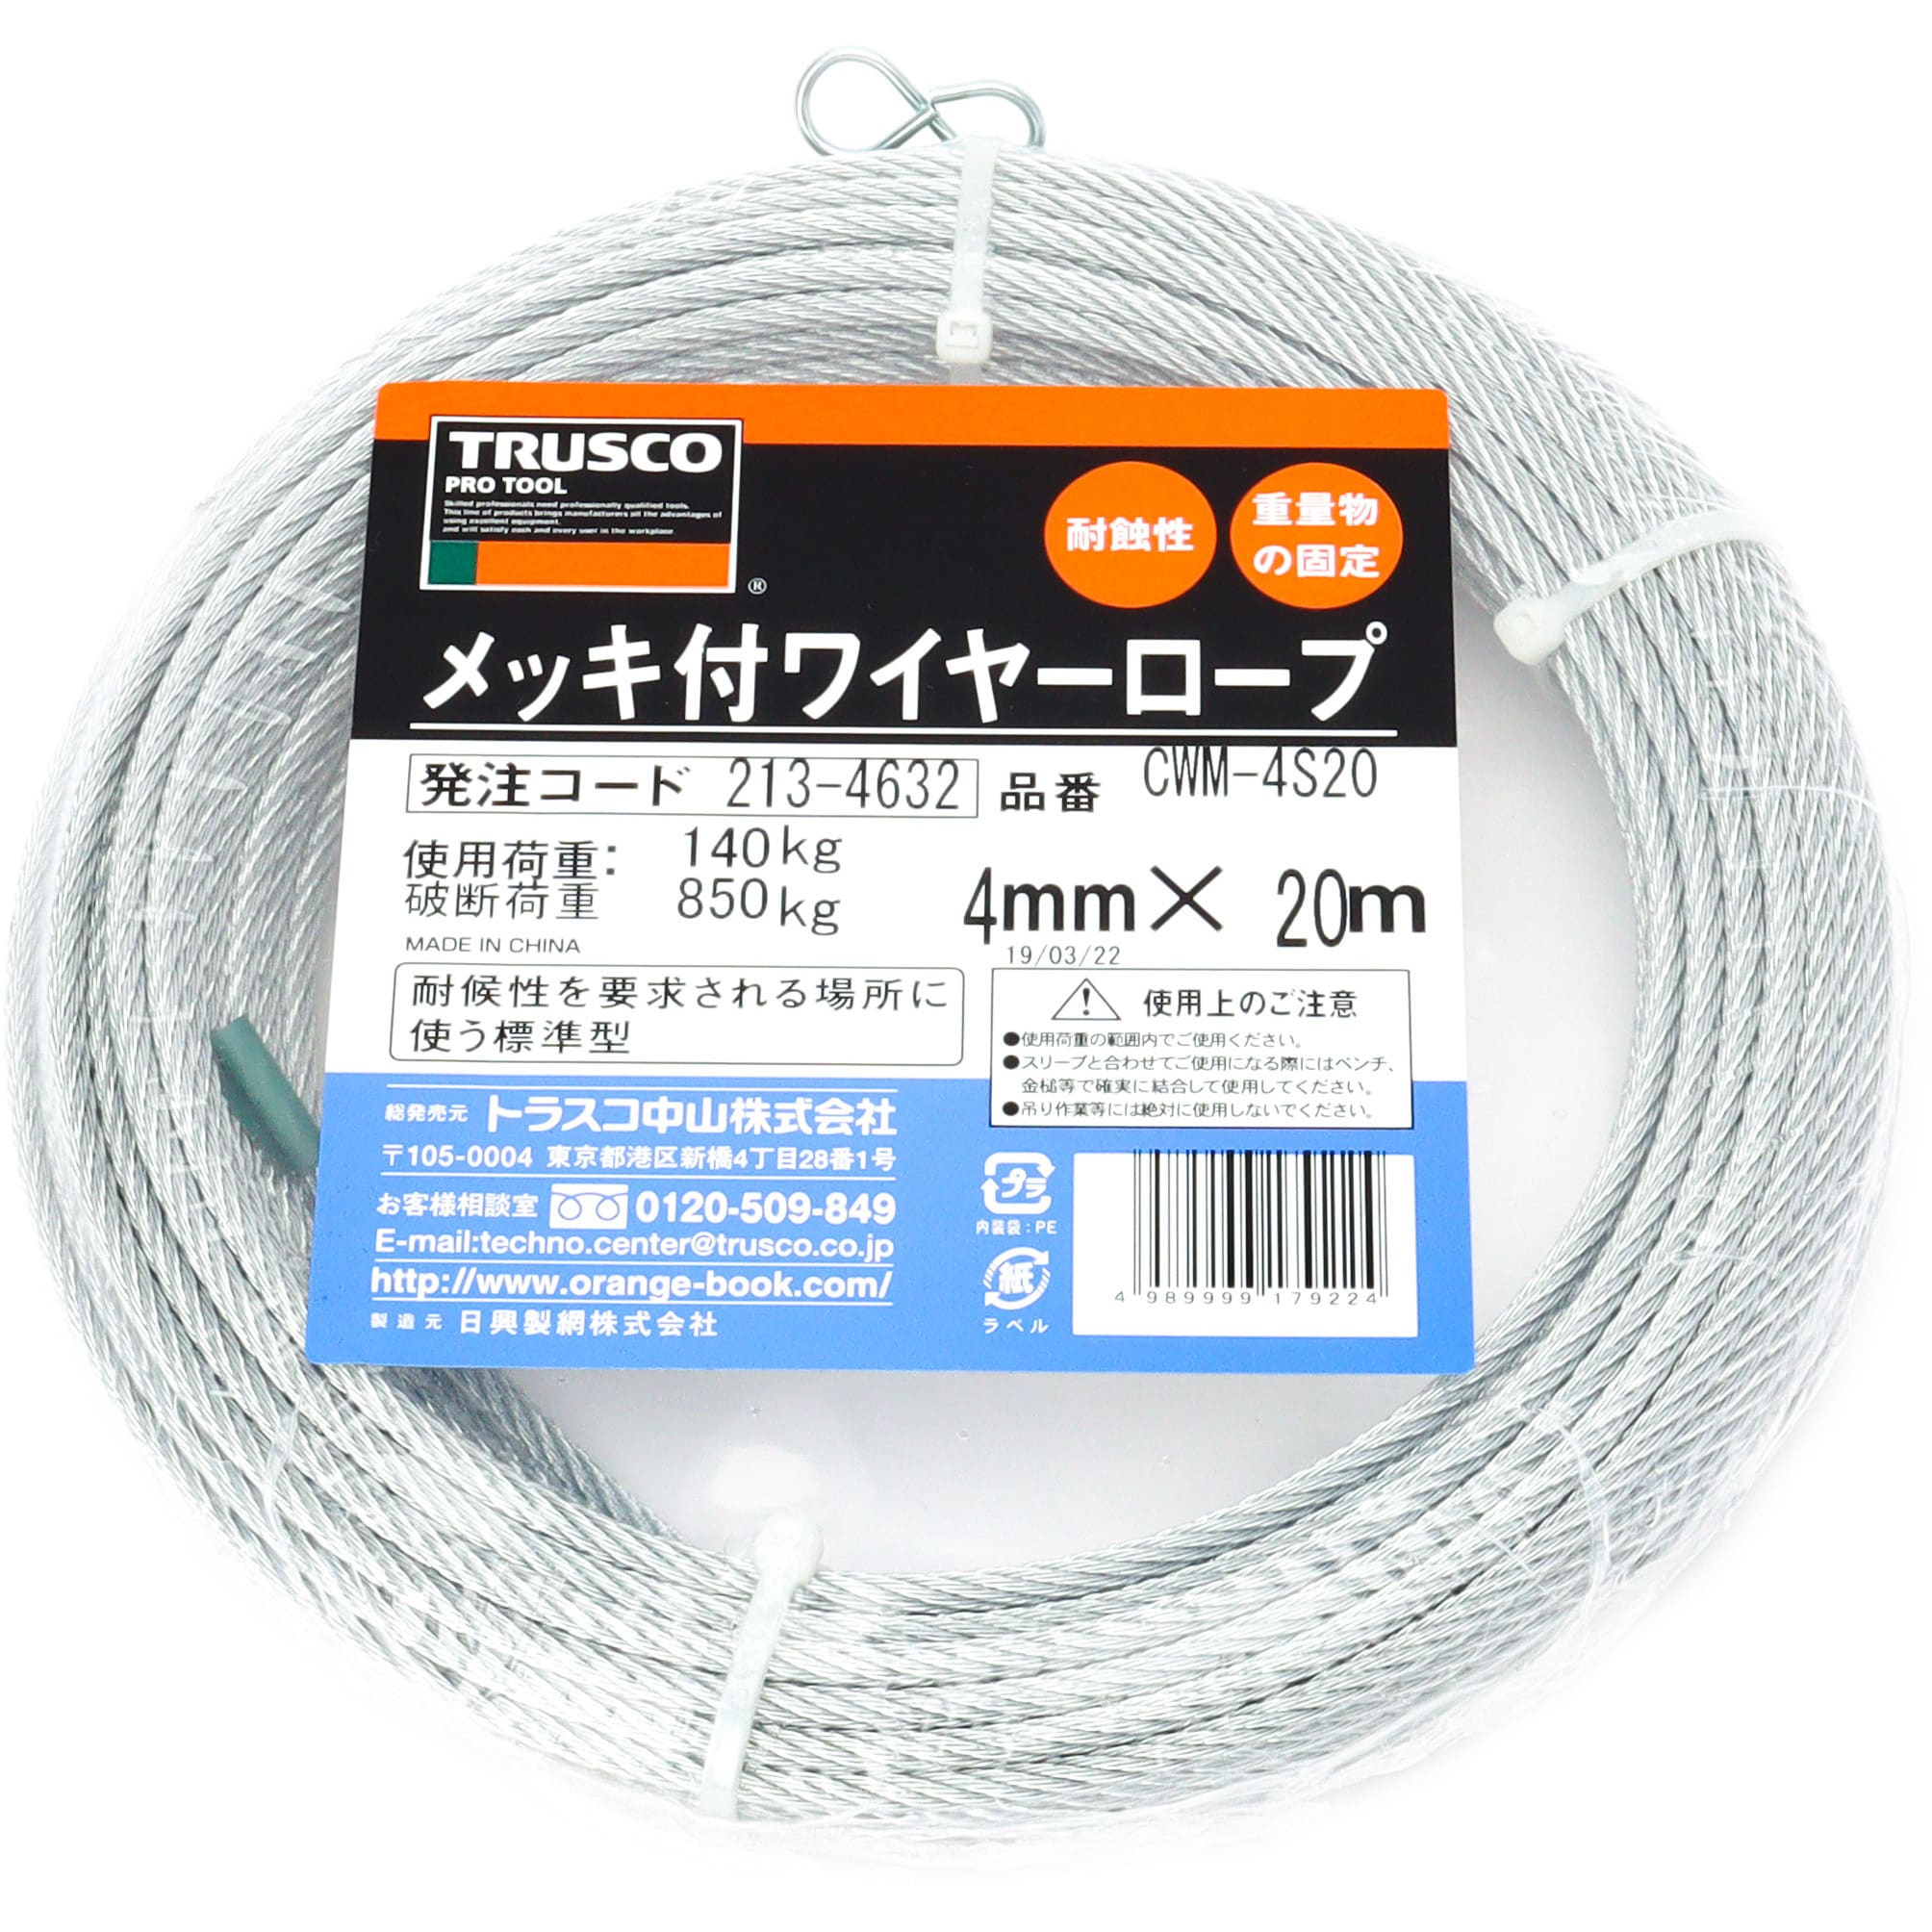 TRUSCO(トラスコ) ステンレスワイヤロープ Φ2.0mm×200m CWS-2S200 通販